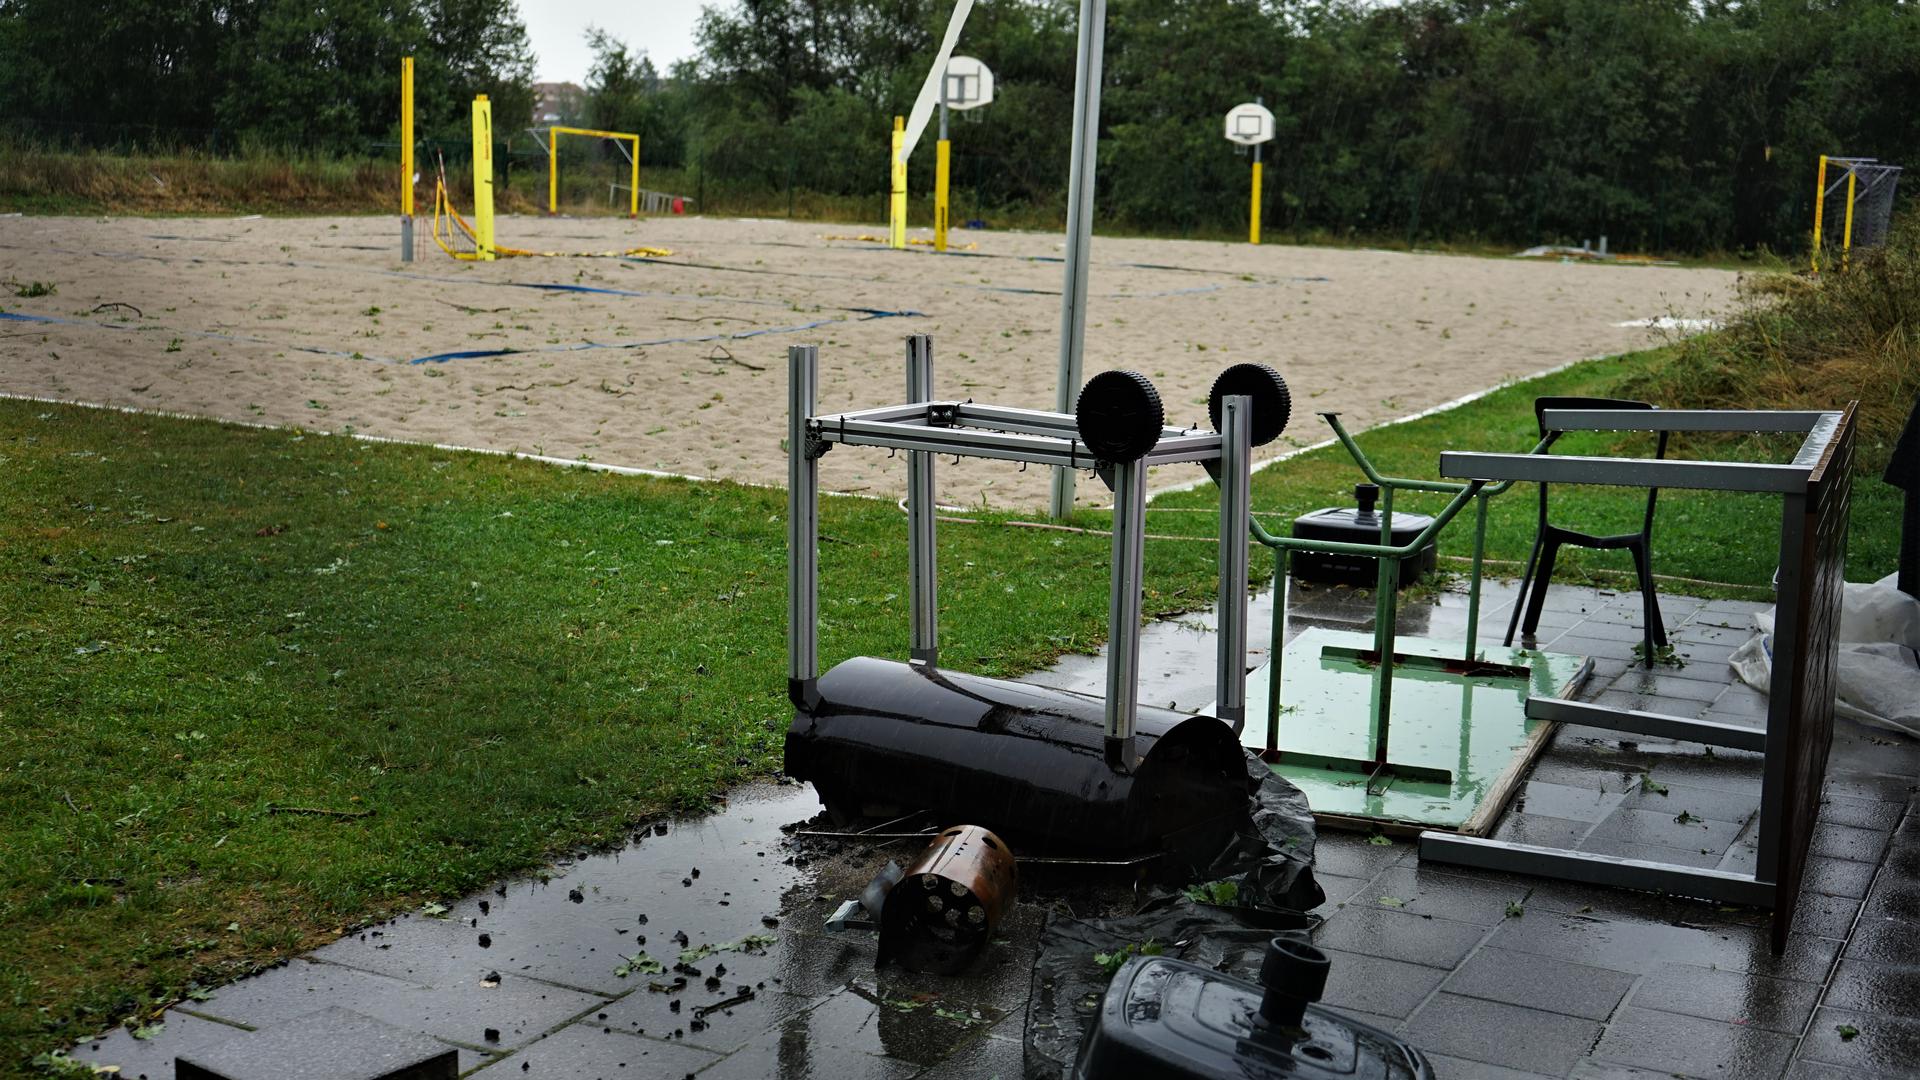 Zerstörung hinterließ der Sturm nicht nur in der Natur, sondern wie hier auch mit Sachschäden auf einem Volleyballfeld in Durmersheim.